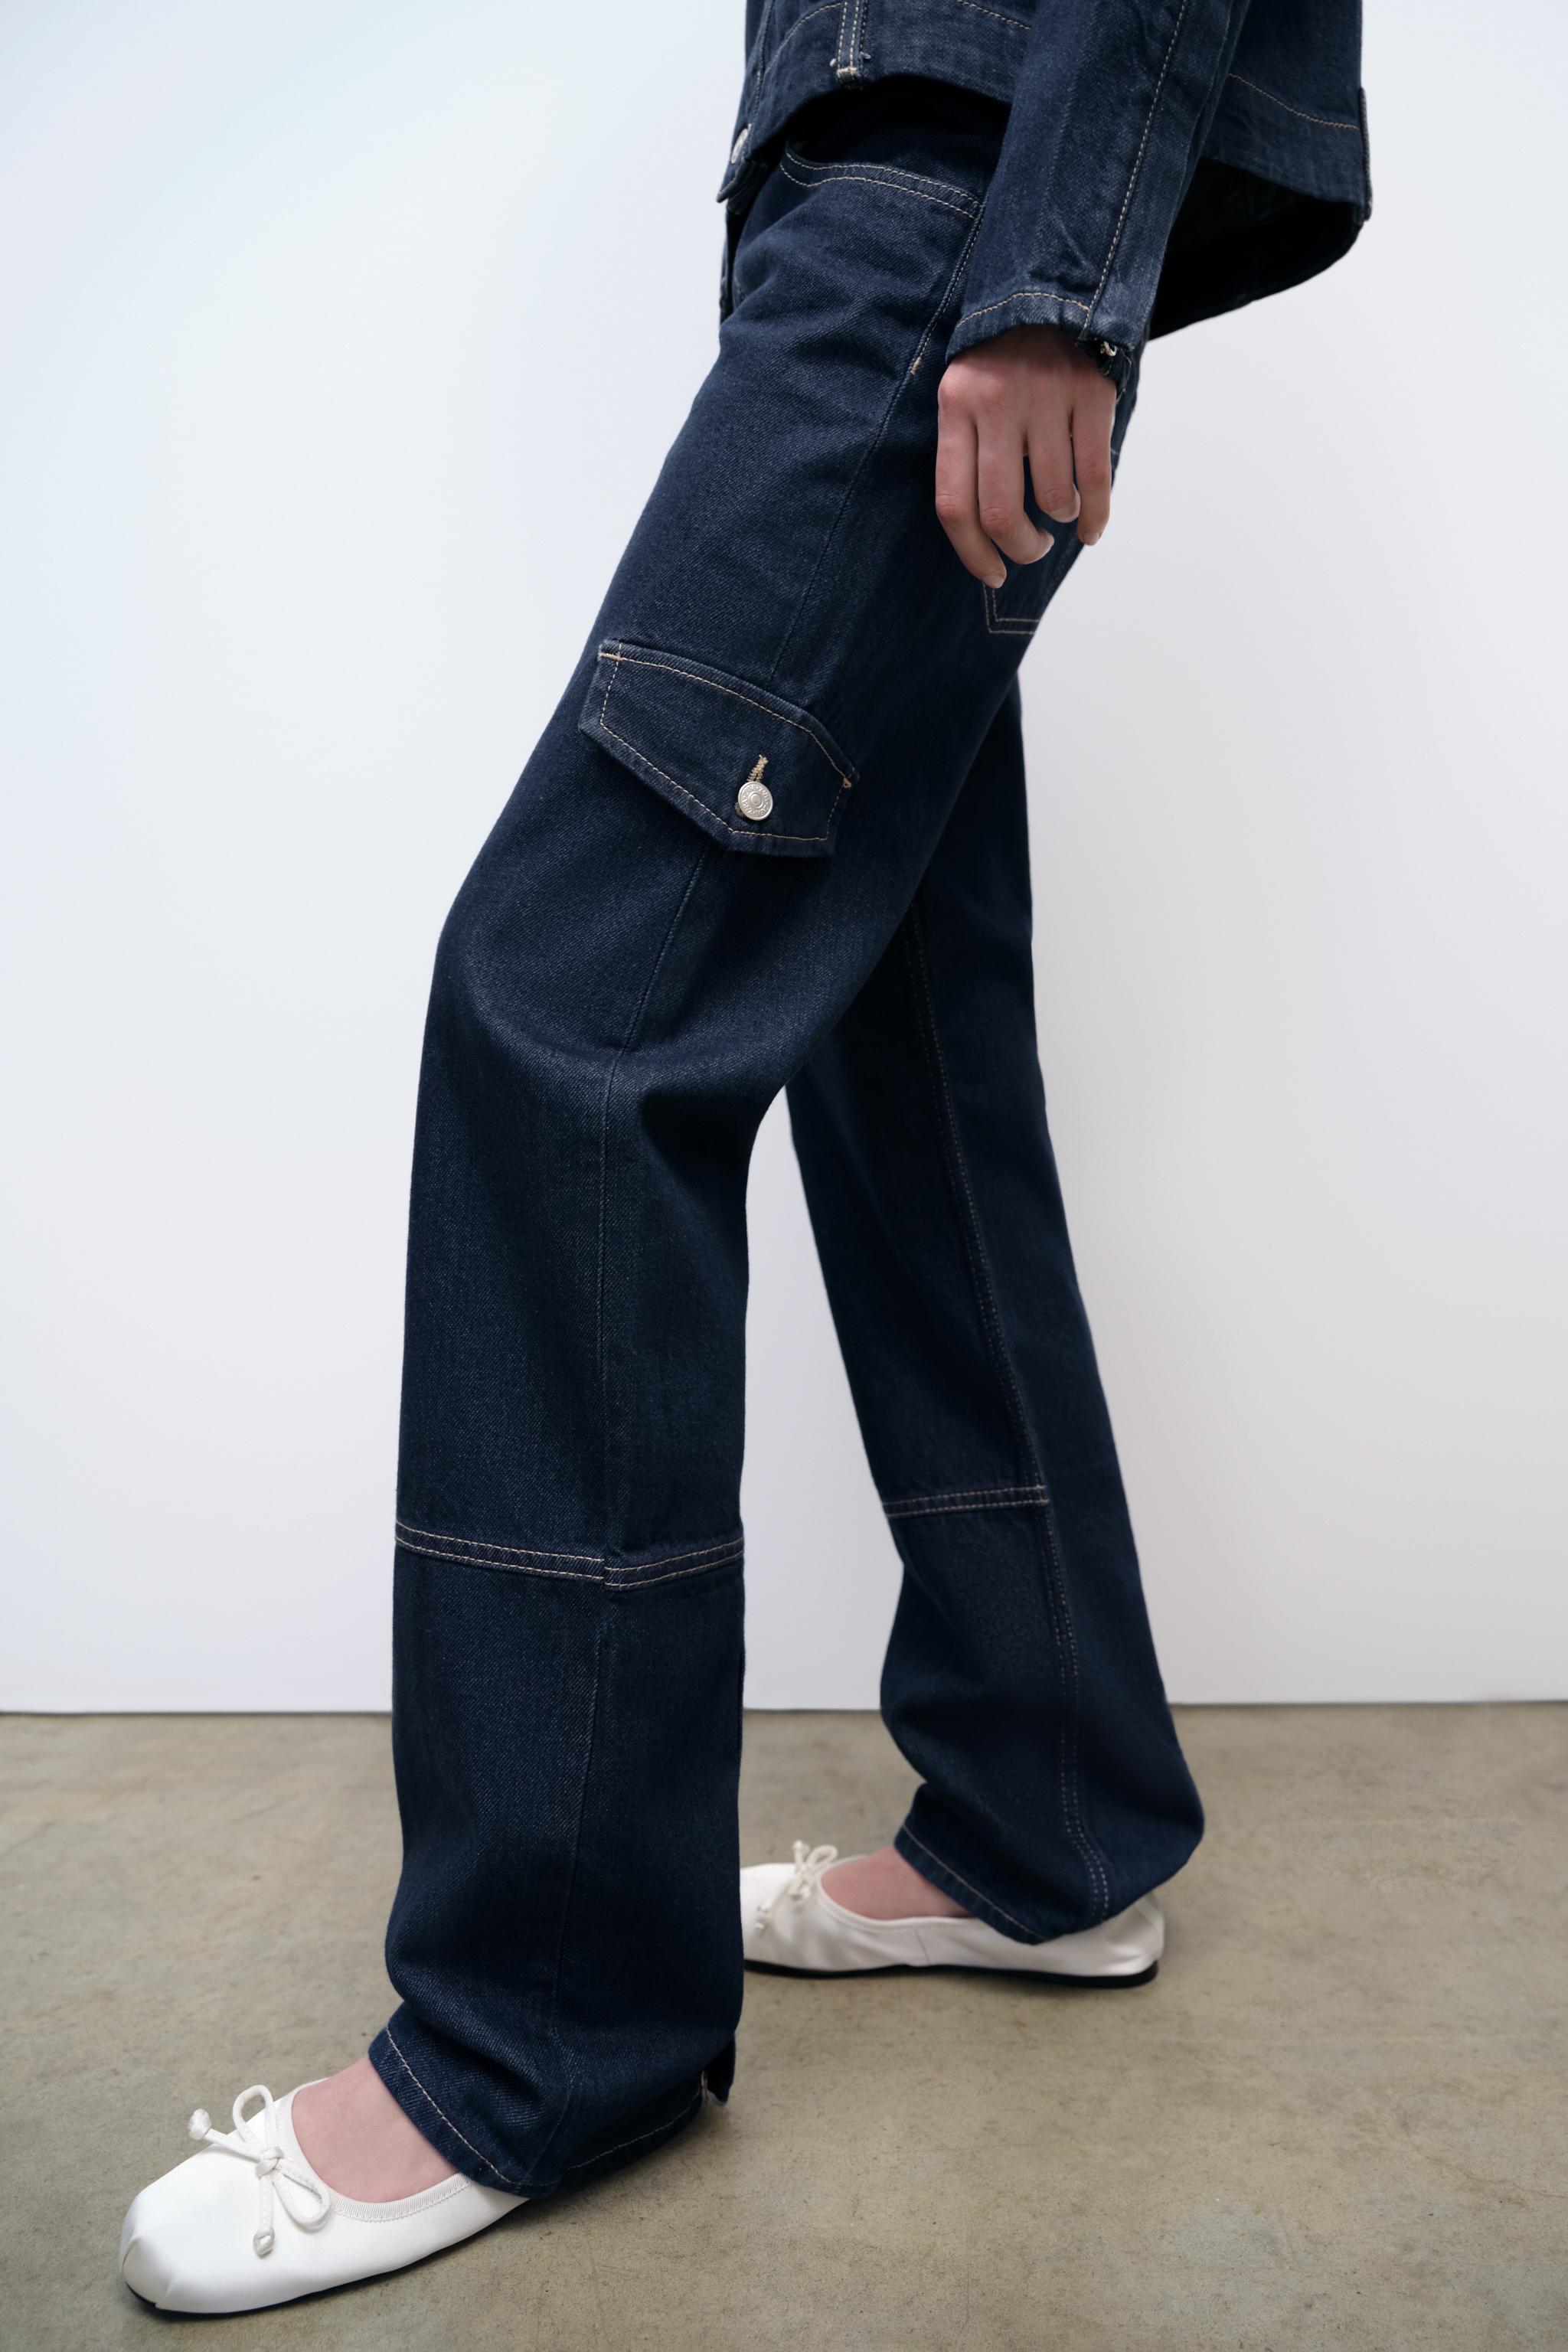 Zara skinny cargo jeans - Depop